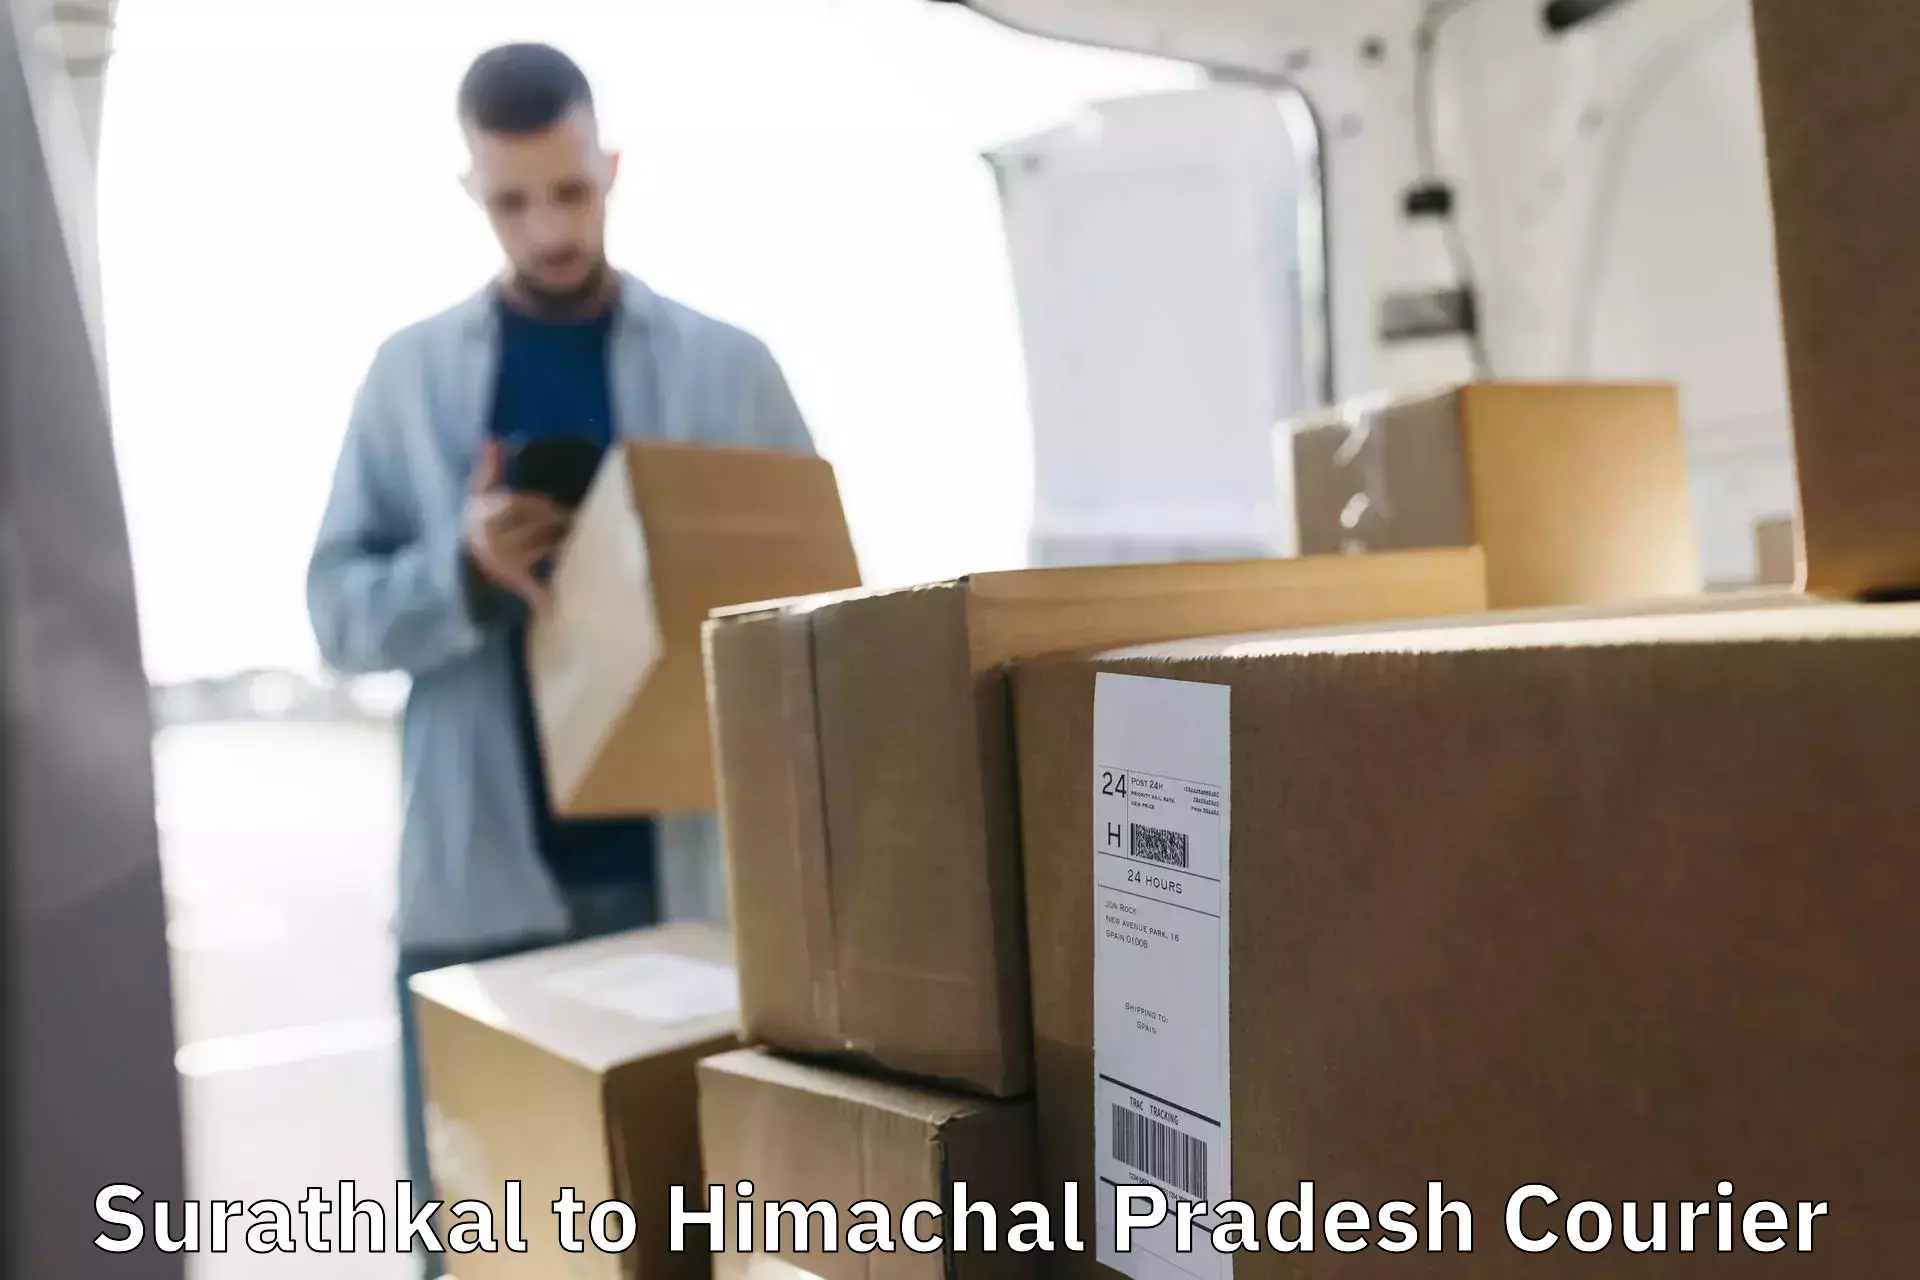 Efficient parcel service Surathkal to Himachal Pradesh